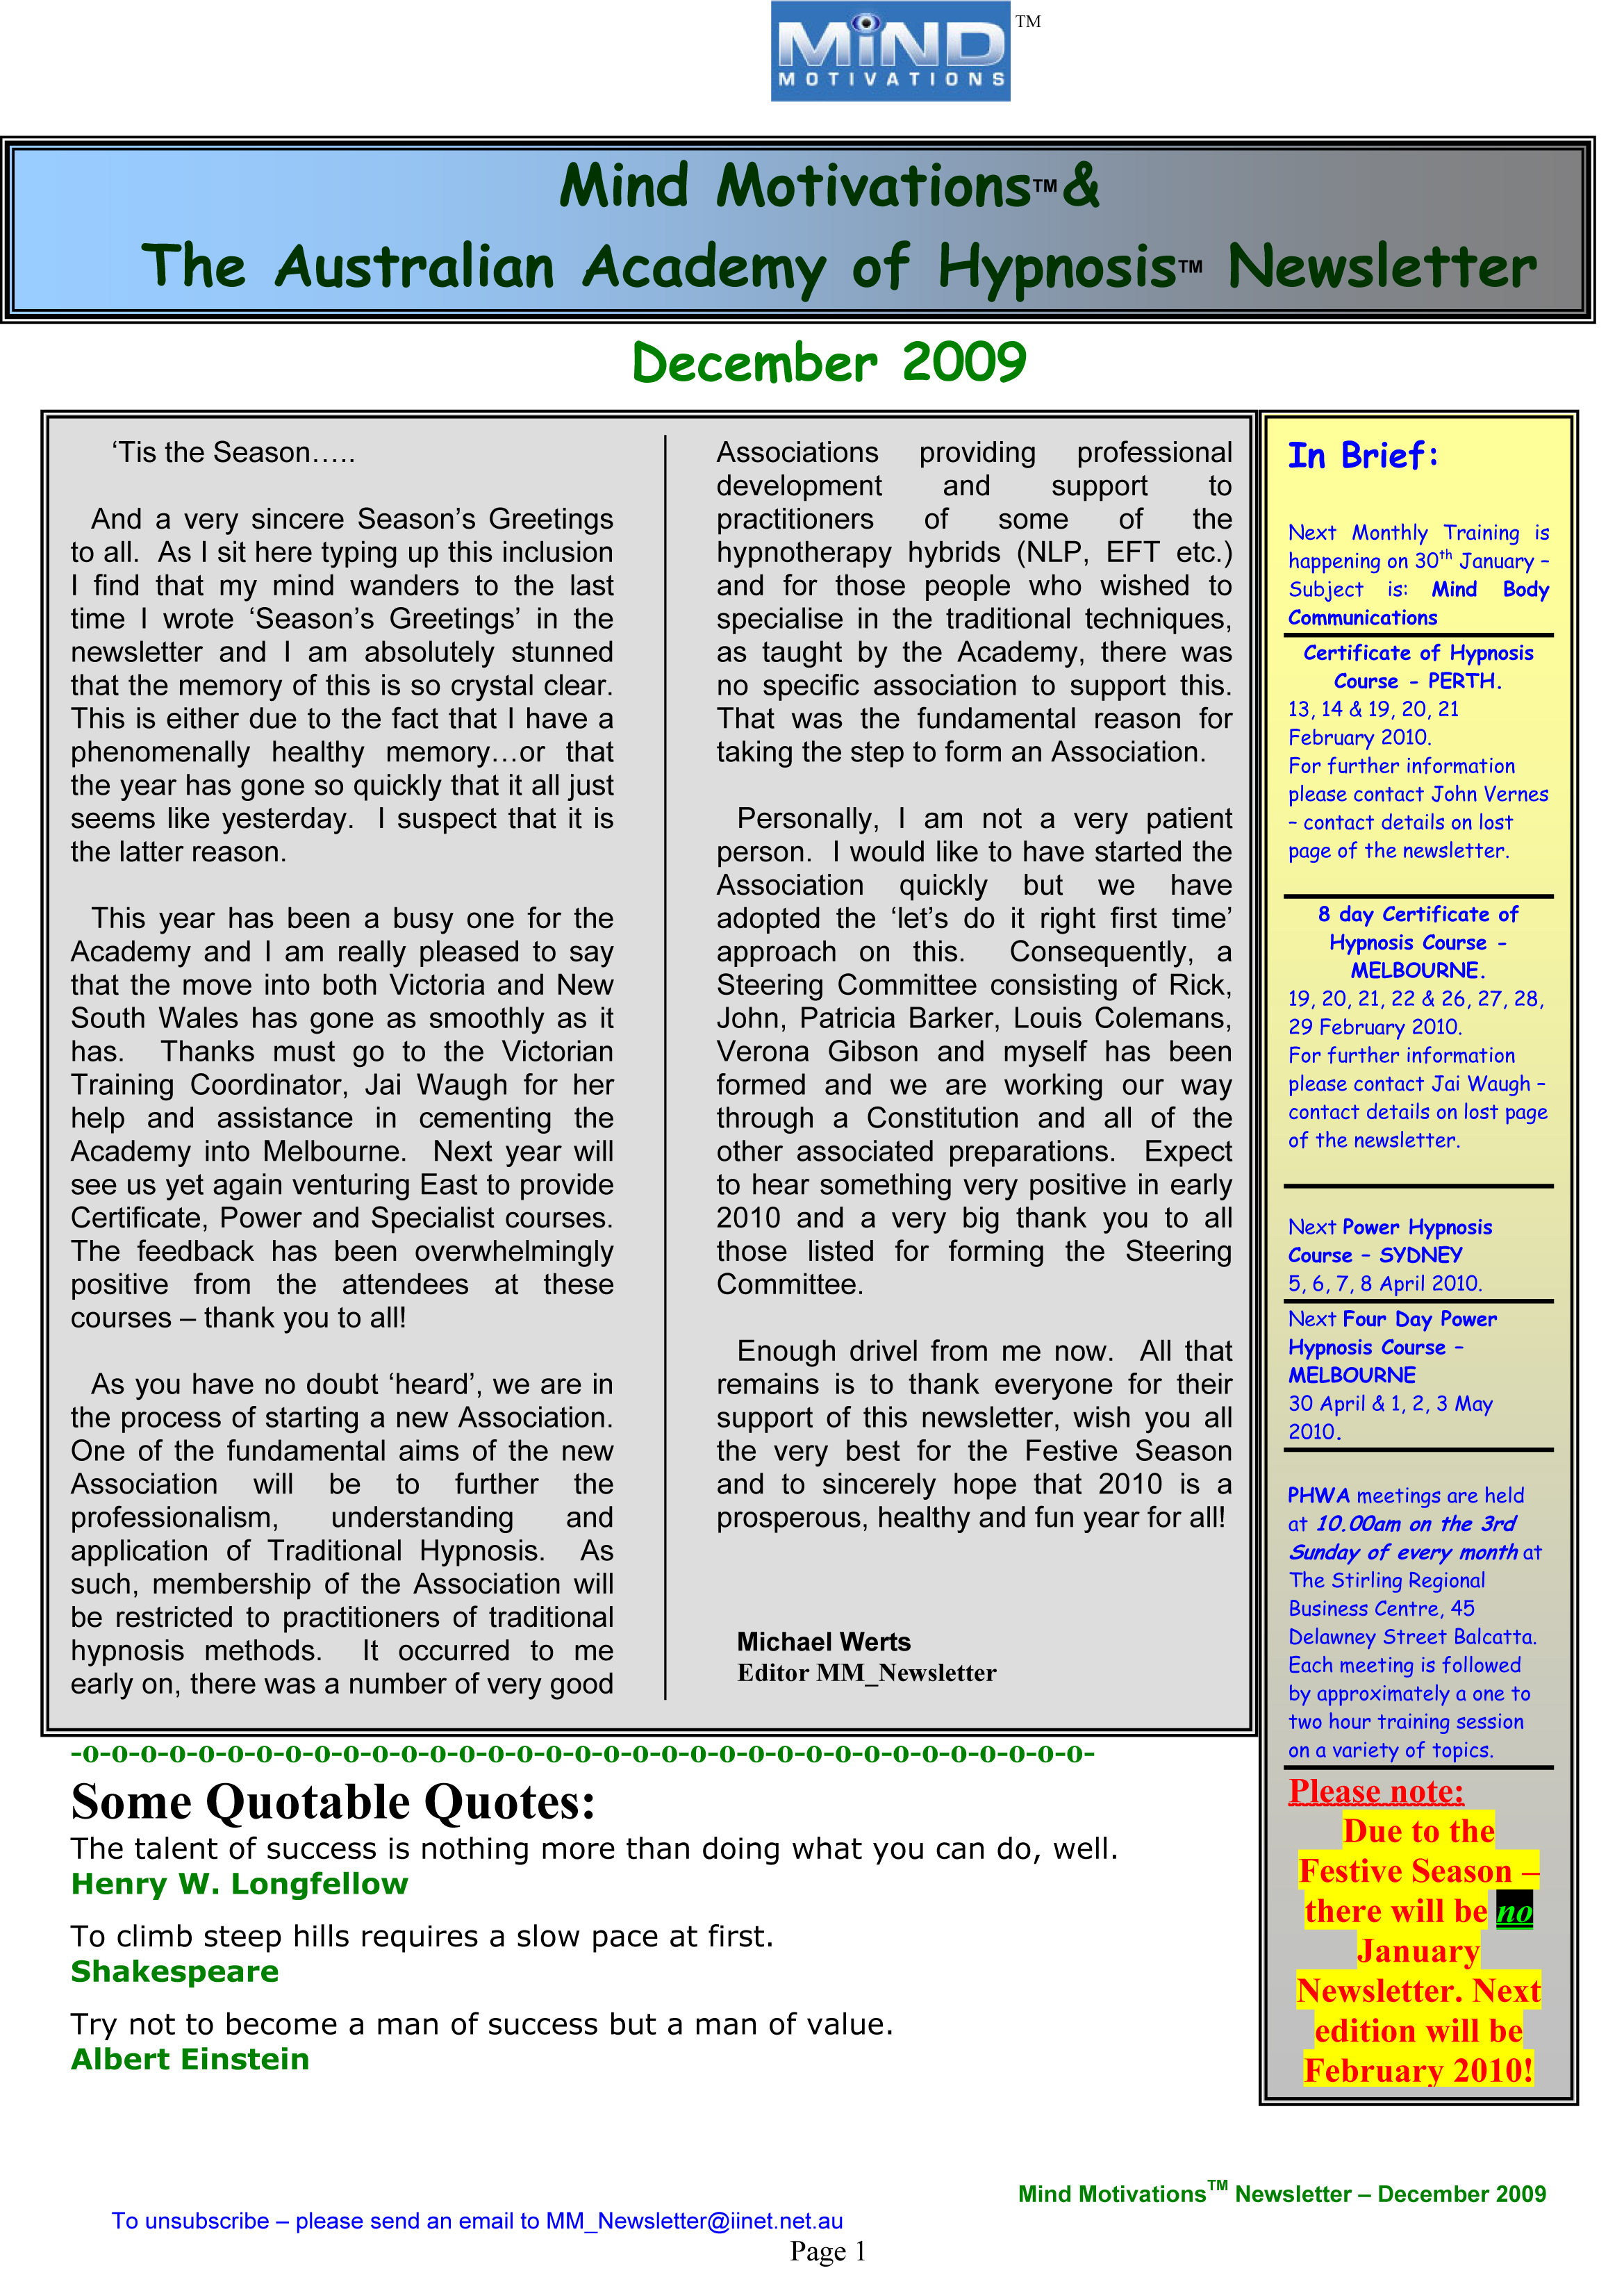 December 2009 Newsletter